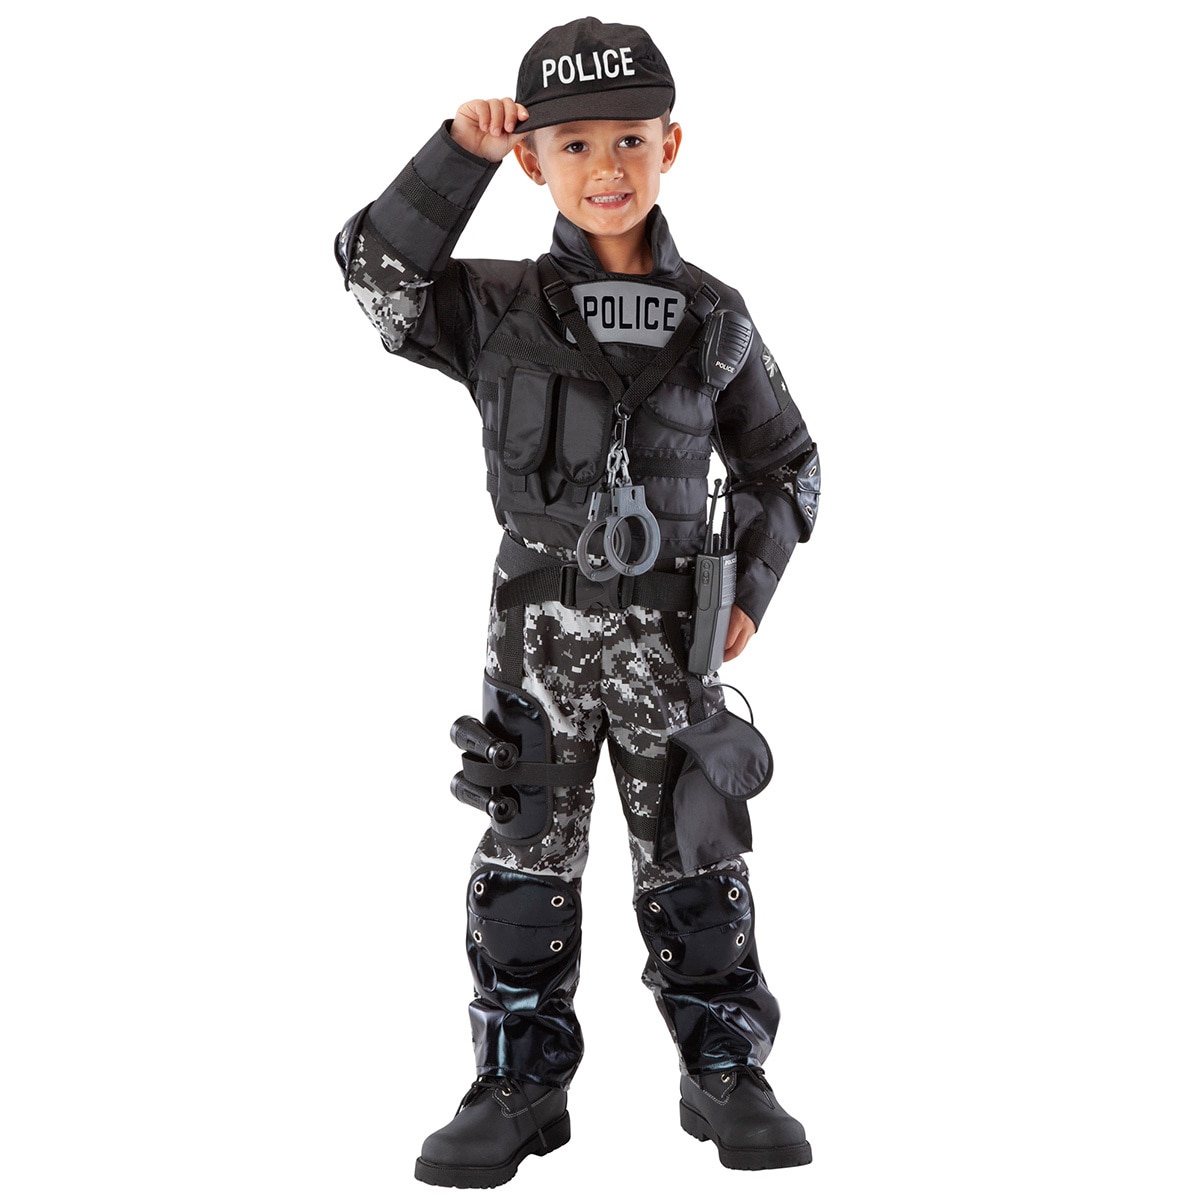 Teetot Kid's Adventure Themed Role-Play Costume Police Team